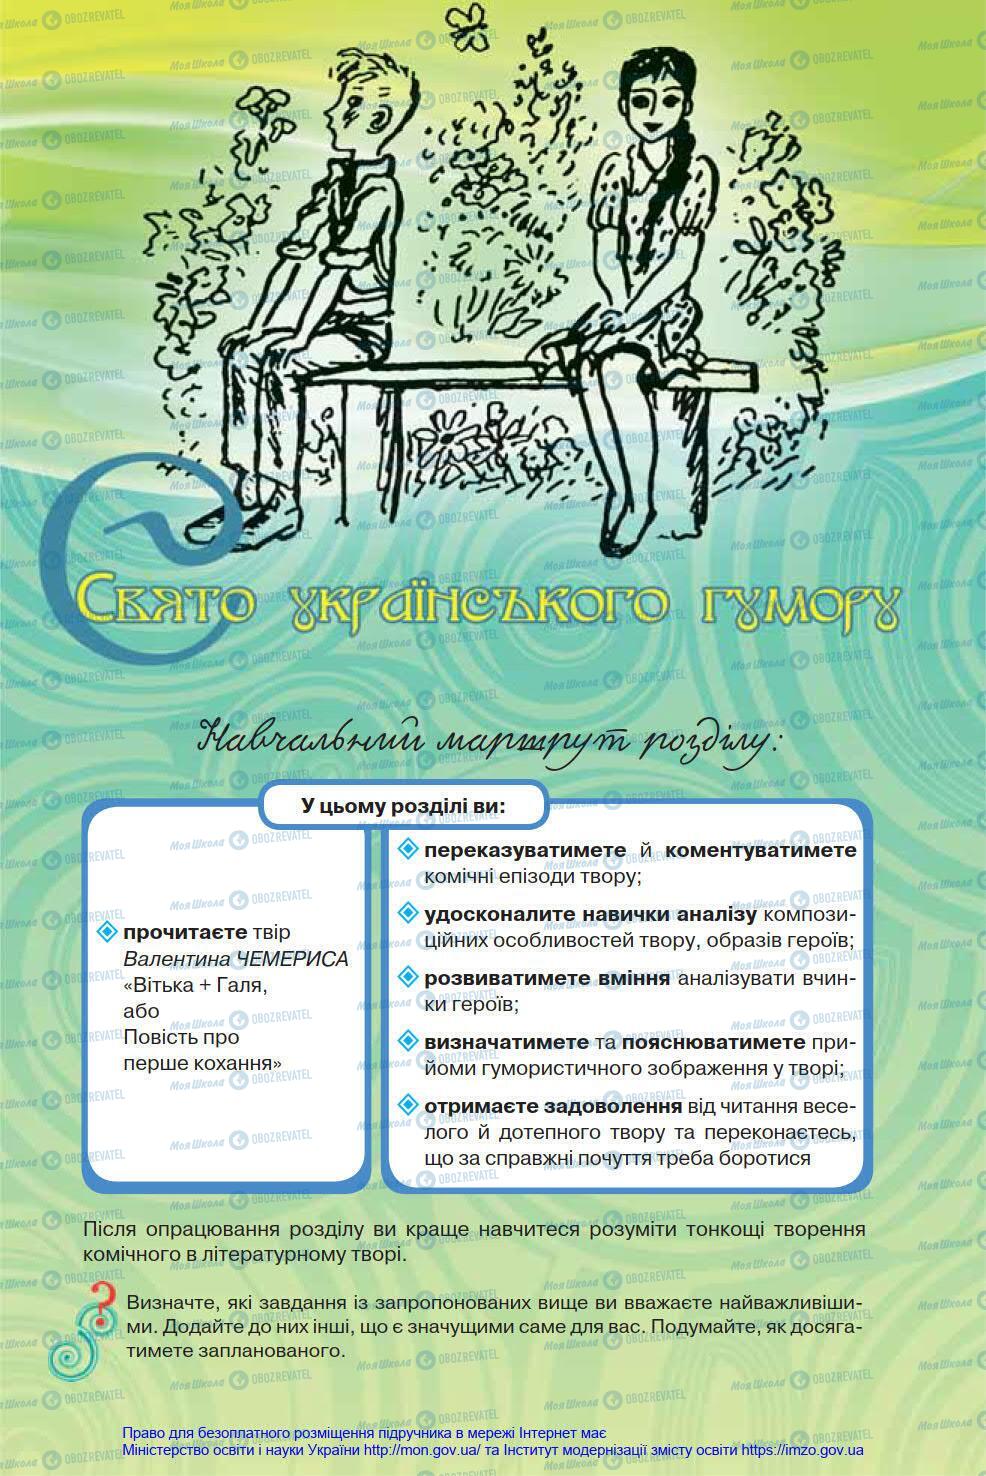 Підручники Українська література 8 клас сторінка 263